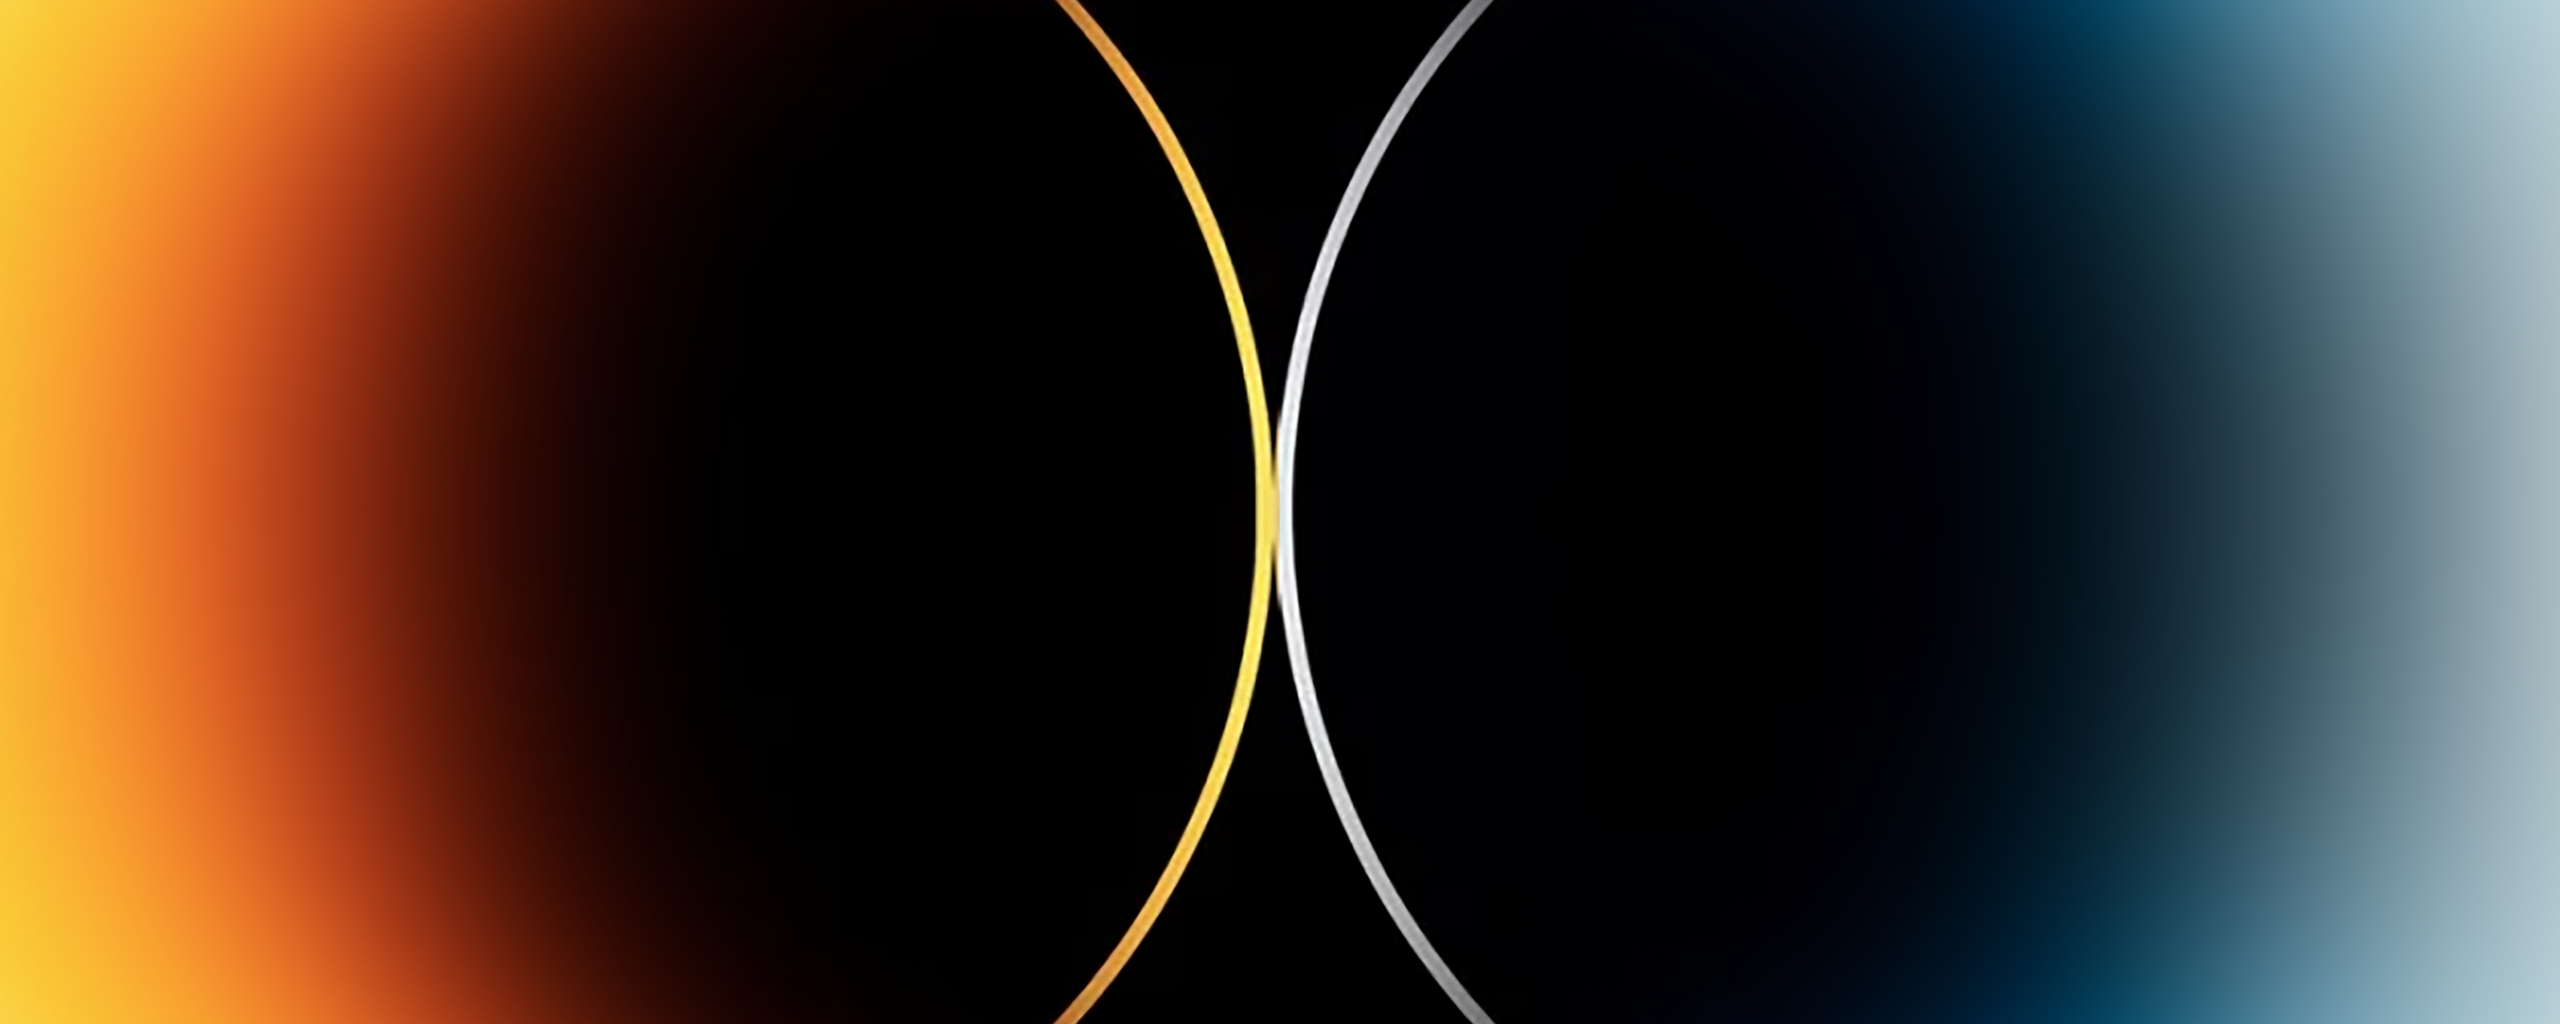 two-circles-8k-ry.jpg